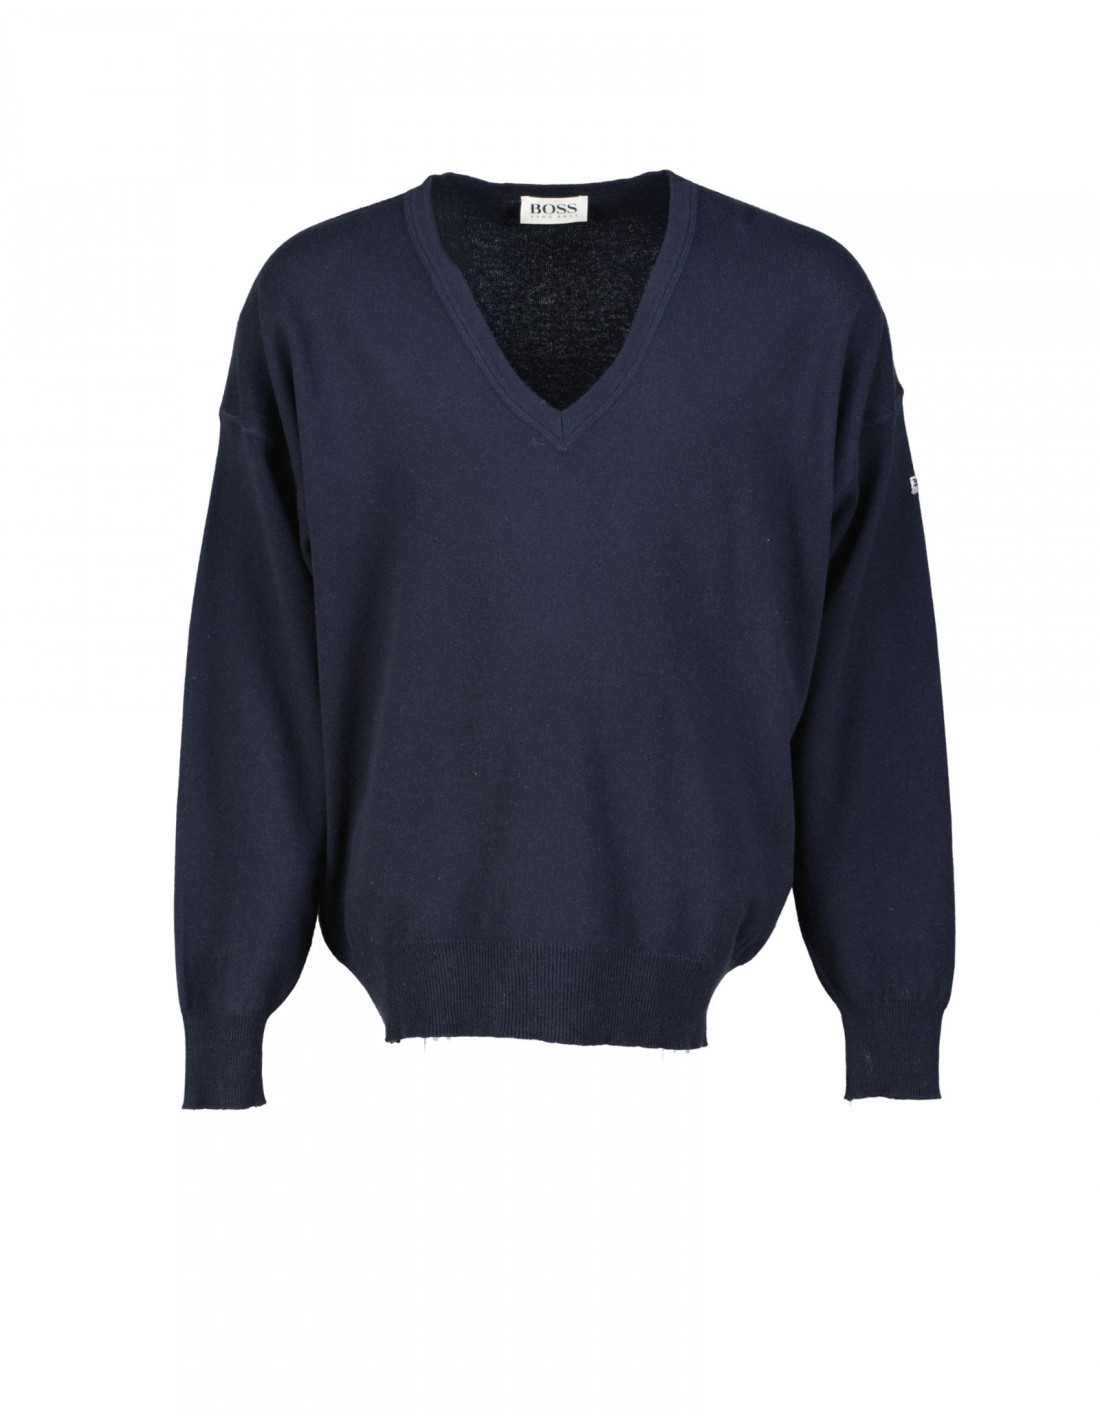 Hugo Boss men's wool V-neck sweater